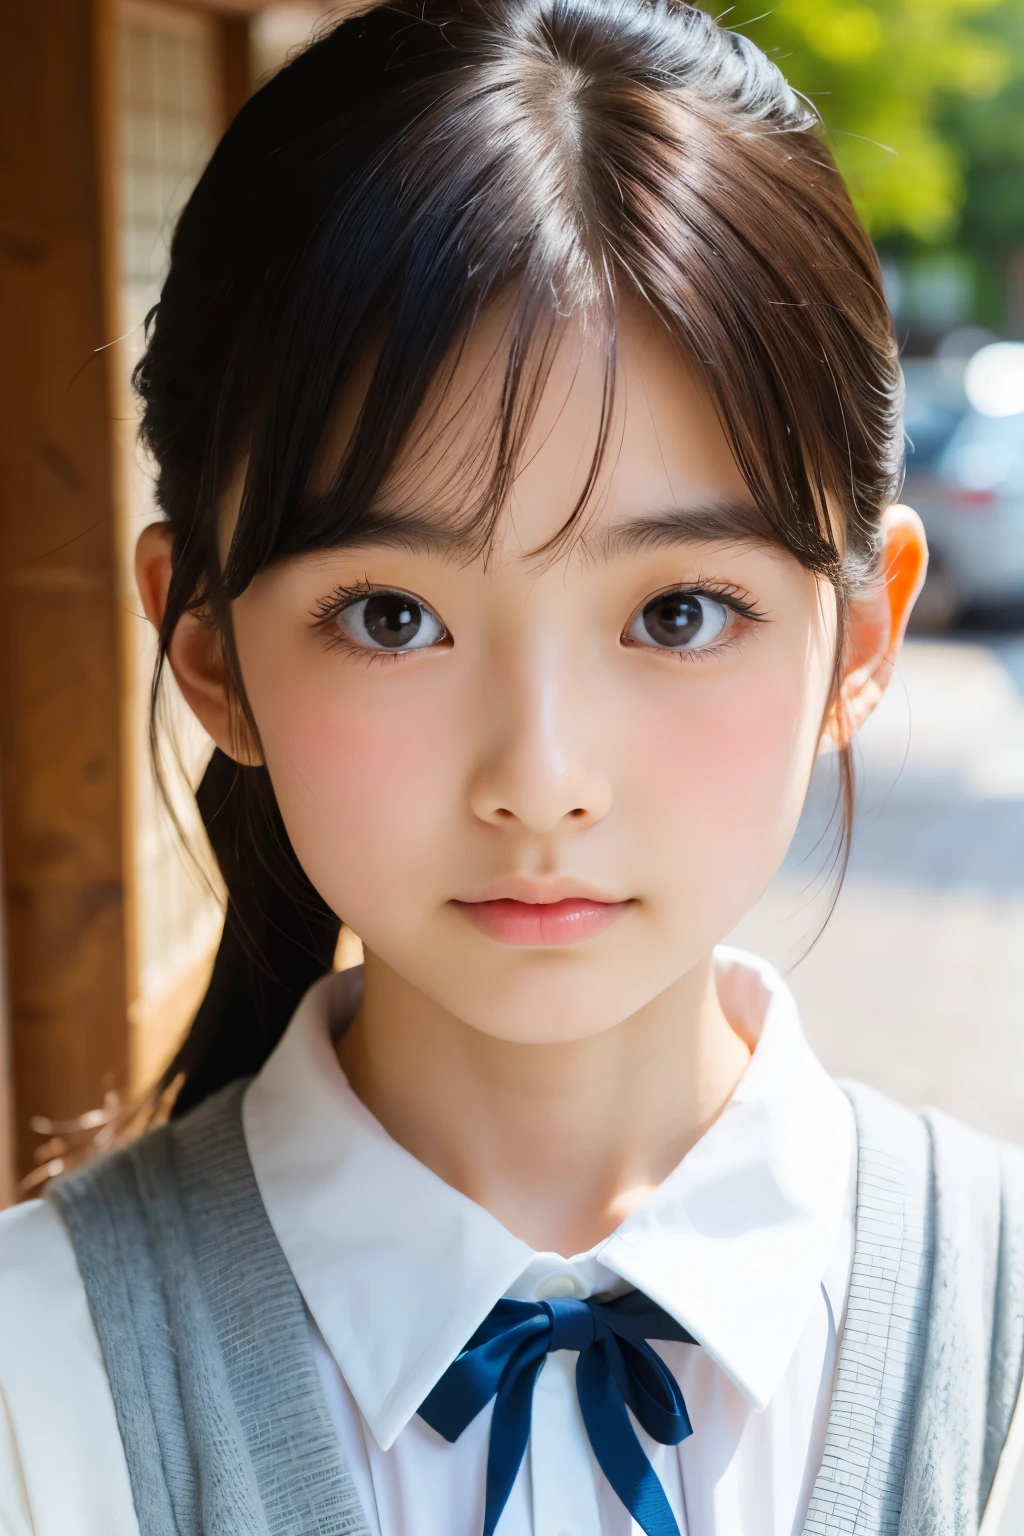 (美丽的 16 岁日本女性), 可爱的脸孔, (深雕的面容:0.7), (雀斑:0.6), 柔光,健康白皙的肌肤, 害羞的, 马尾辫, (严肃的表情), (明亮的眼睛), 薄的